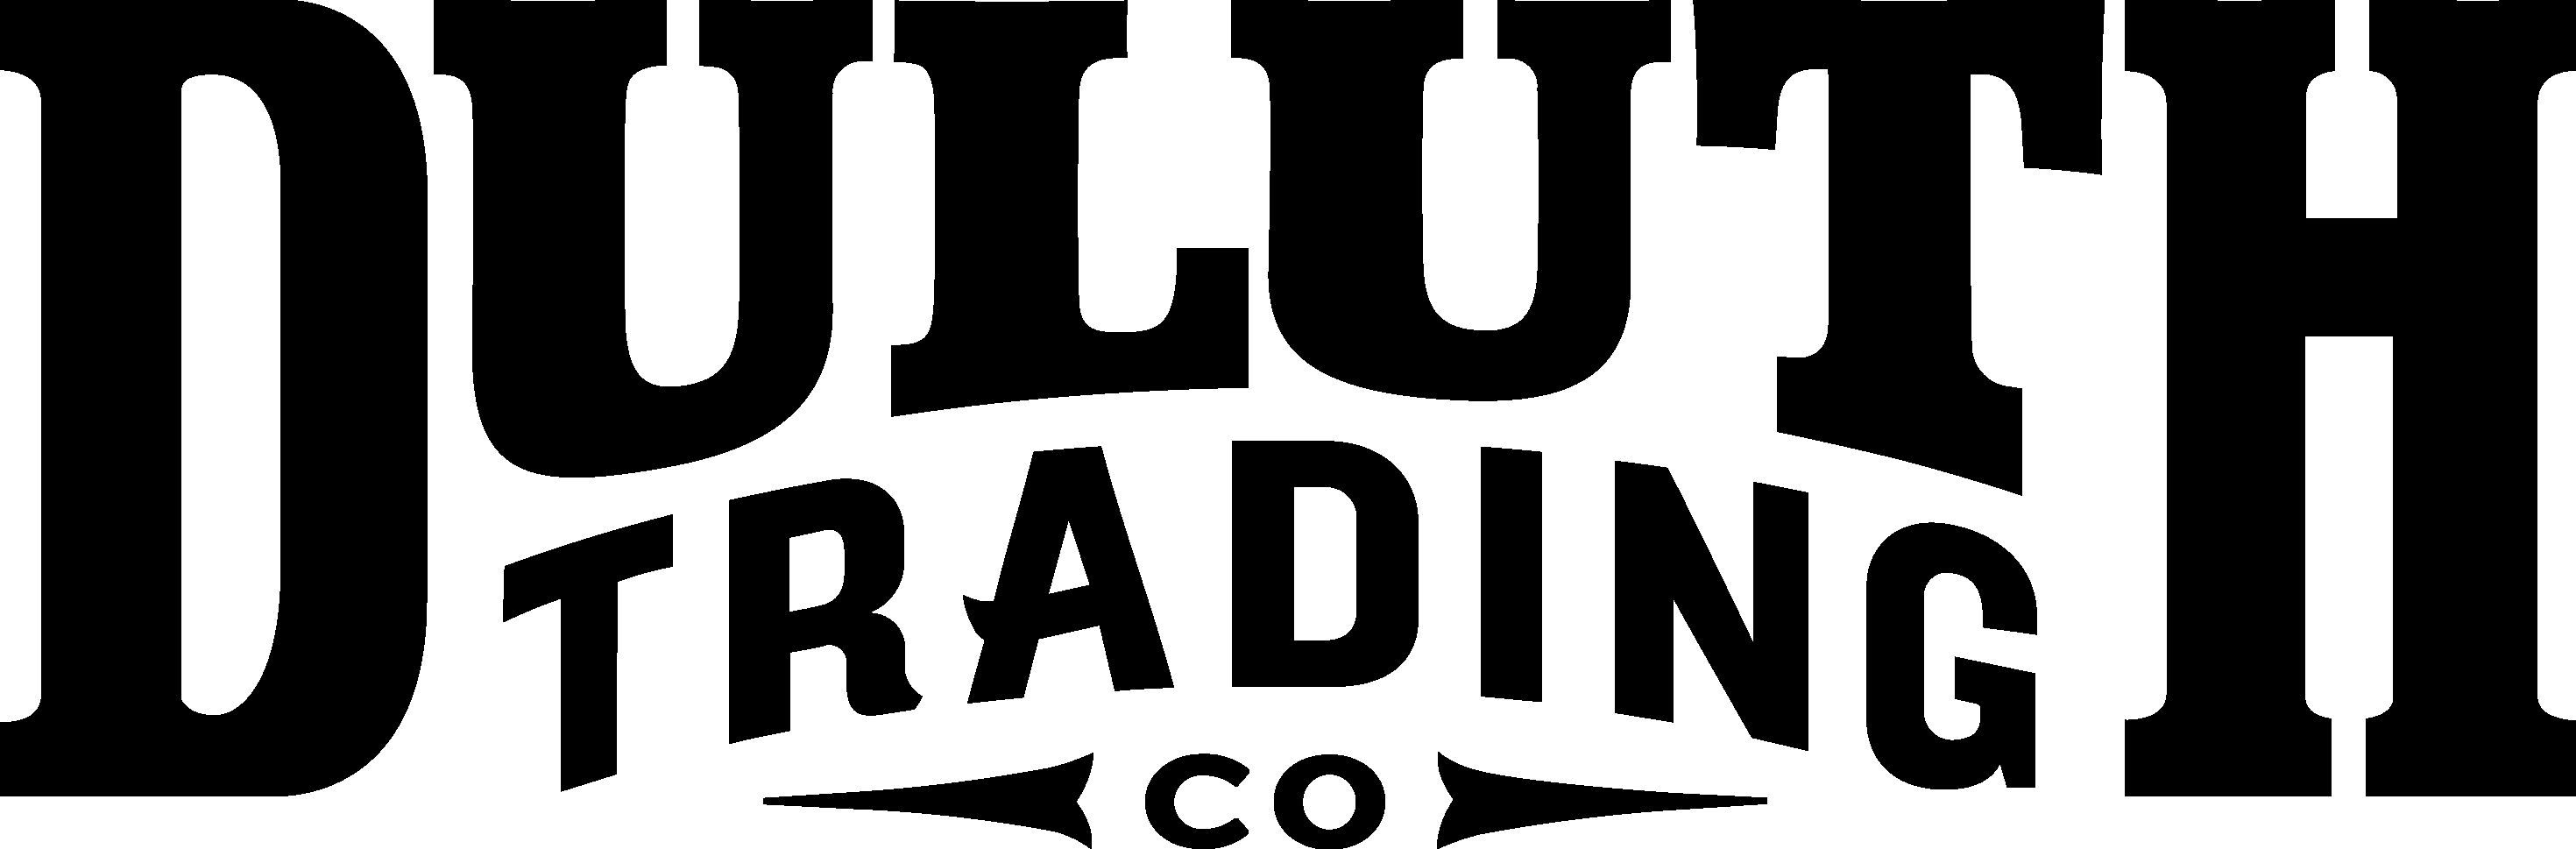 Duluth Trading Logo png